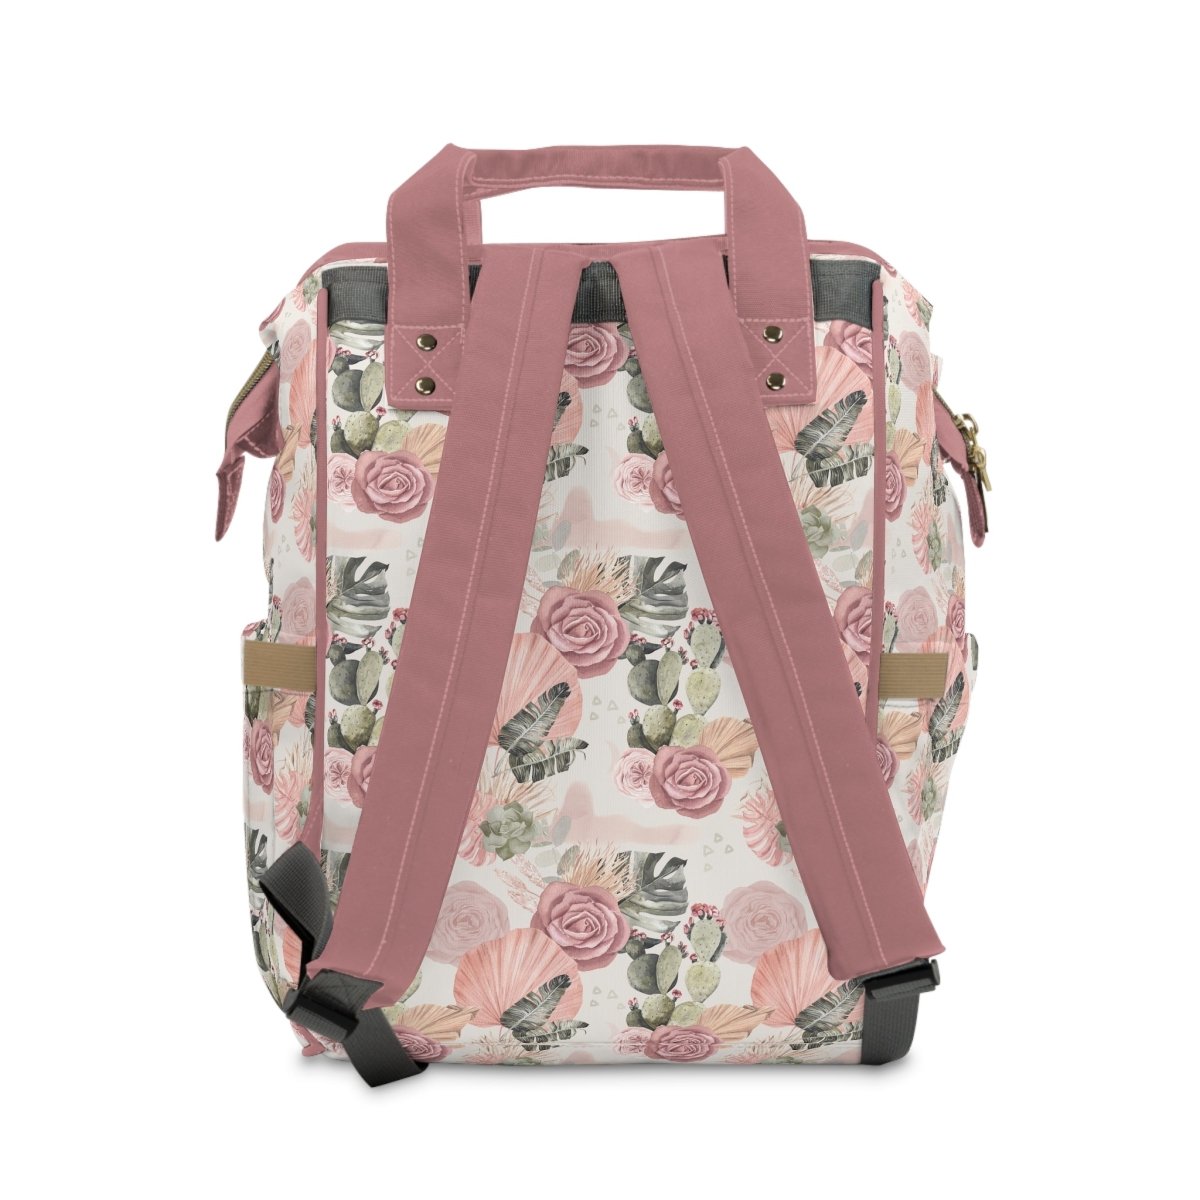 Desert Rose Personalized Backpack Diaper Bag - Desert Rose, gender_girl, text